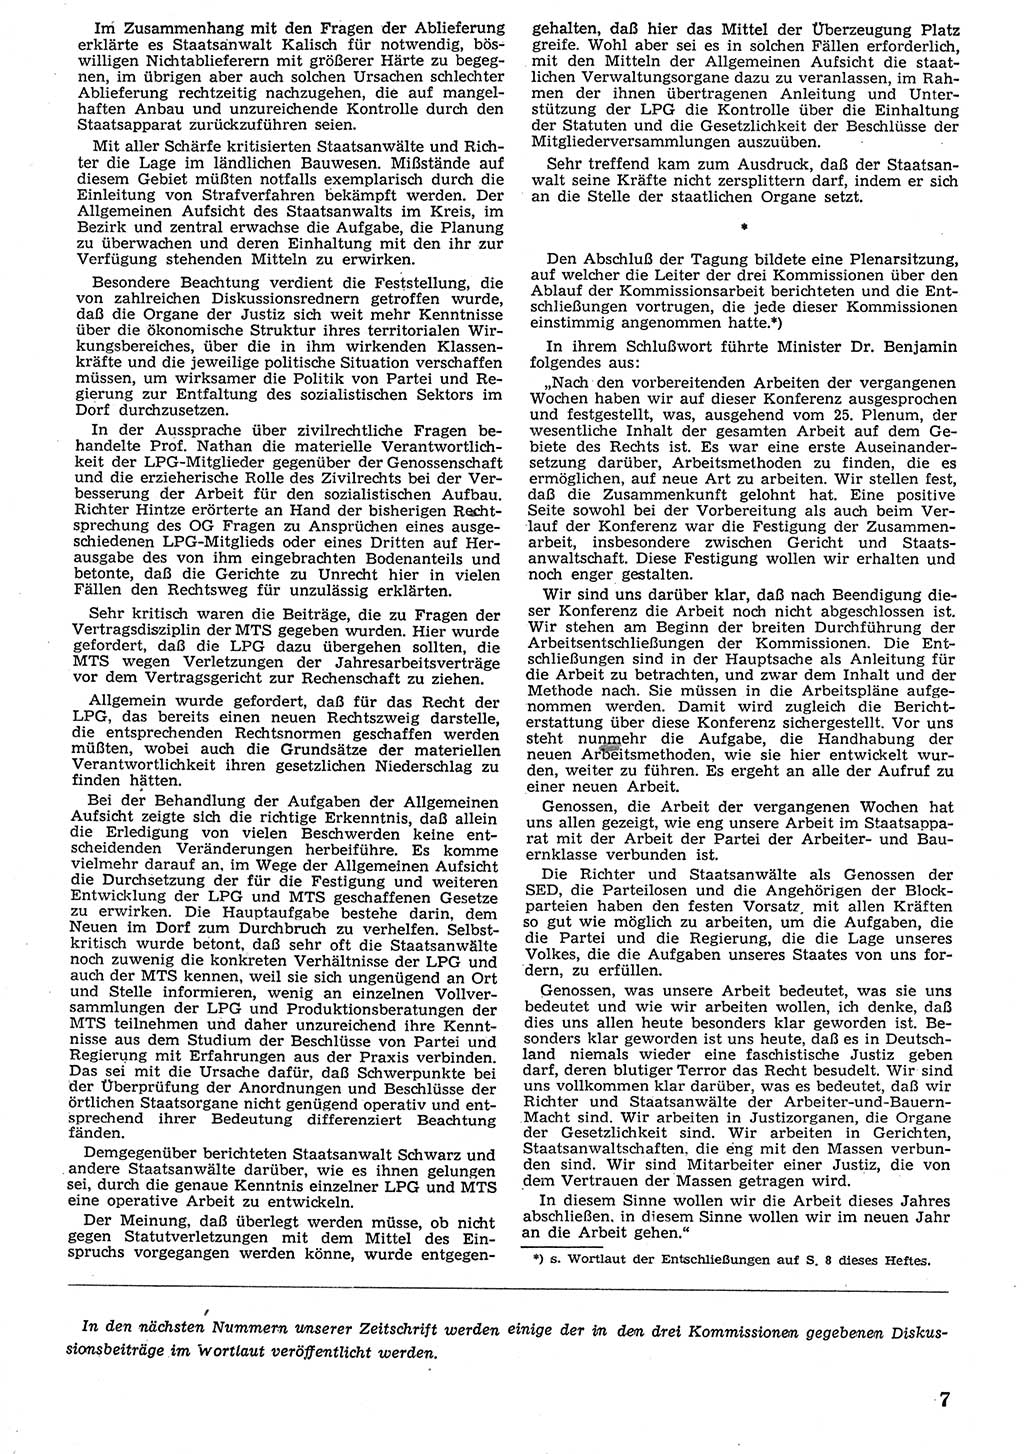 Neue Justiz (NJ), Zeitschrift für Recht und Rechtswissenschaft [Deutsche Demokratische Republik (DDR)], 10. Jahrgang 1956, Seite 7 (NJ DDR 1956, S. 7)